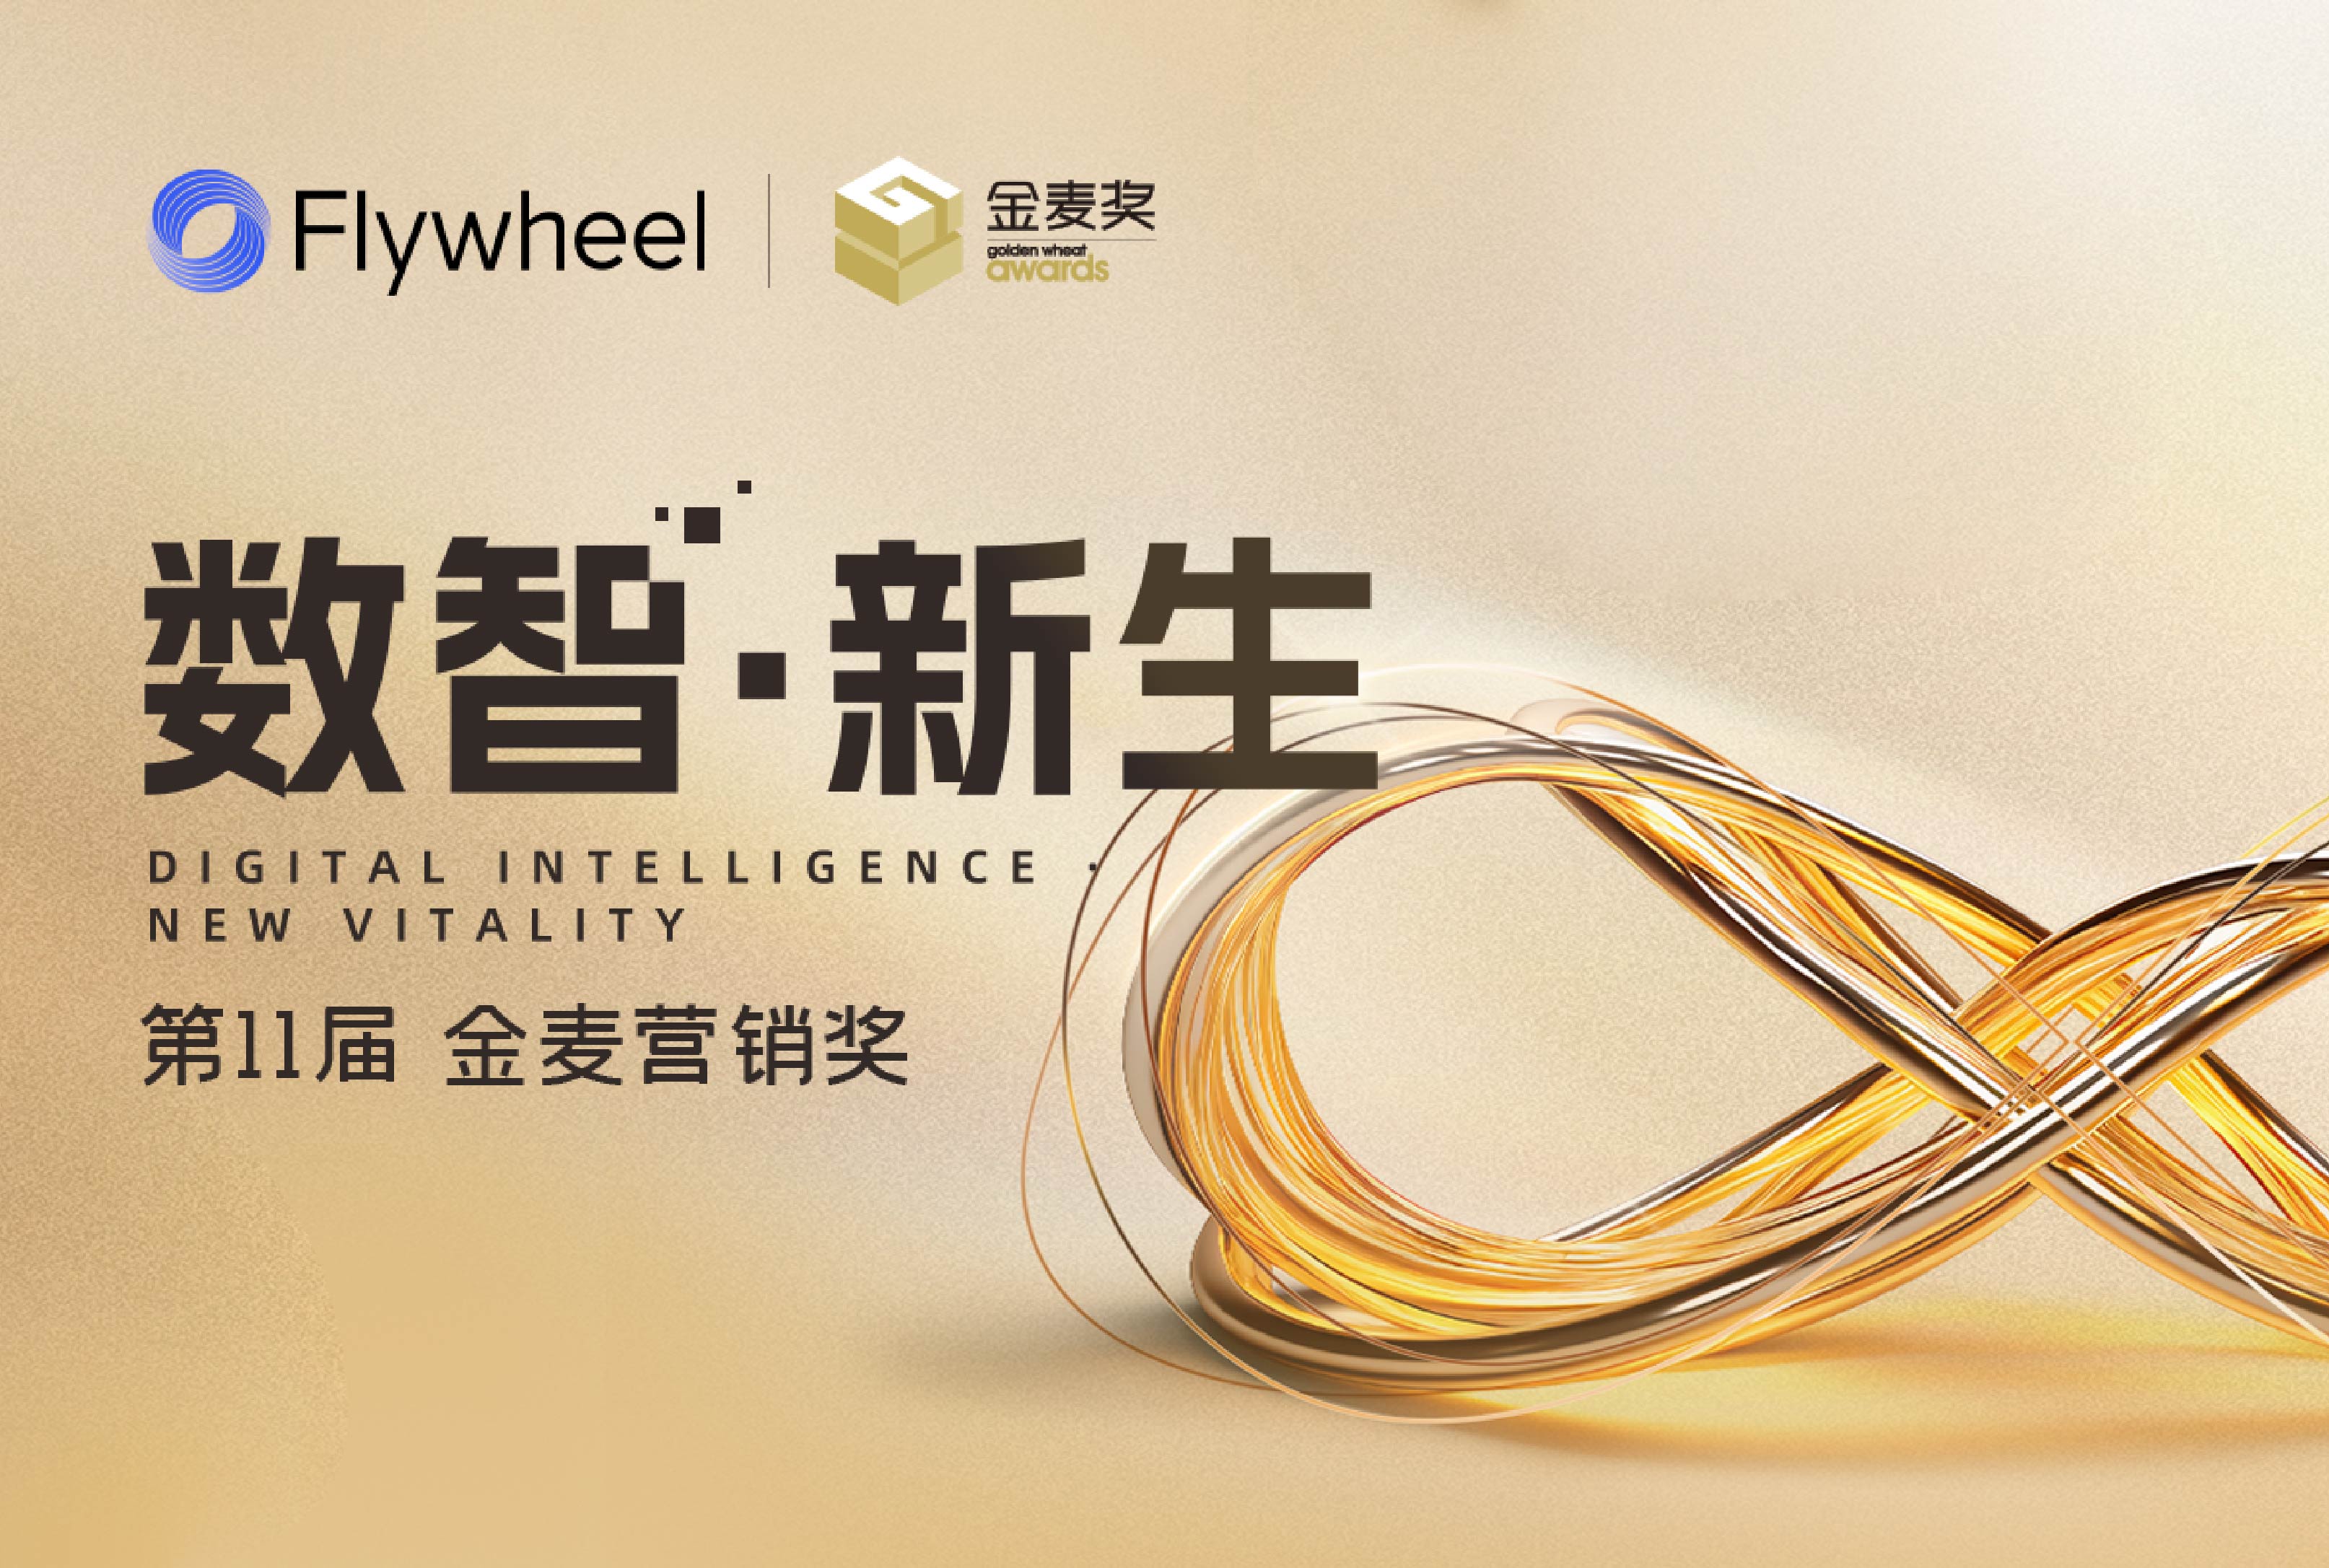 数字商务咨询公司Flywheel飞未荣获金麦奖两大奖项